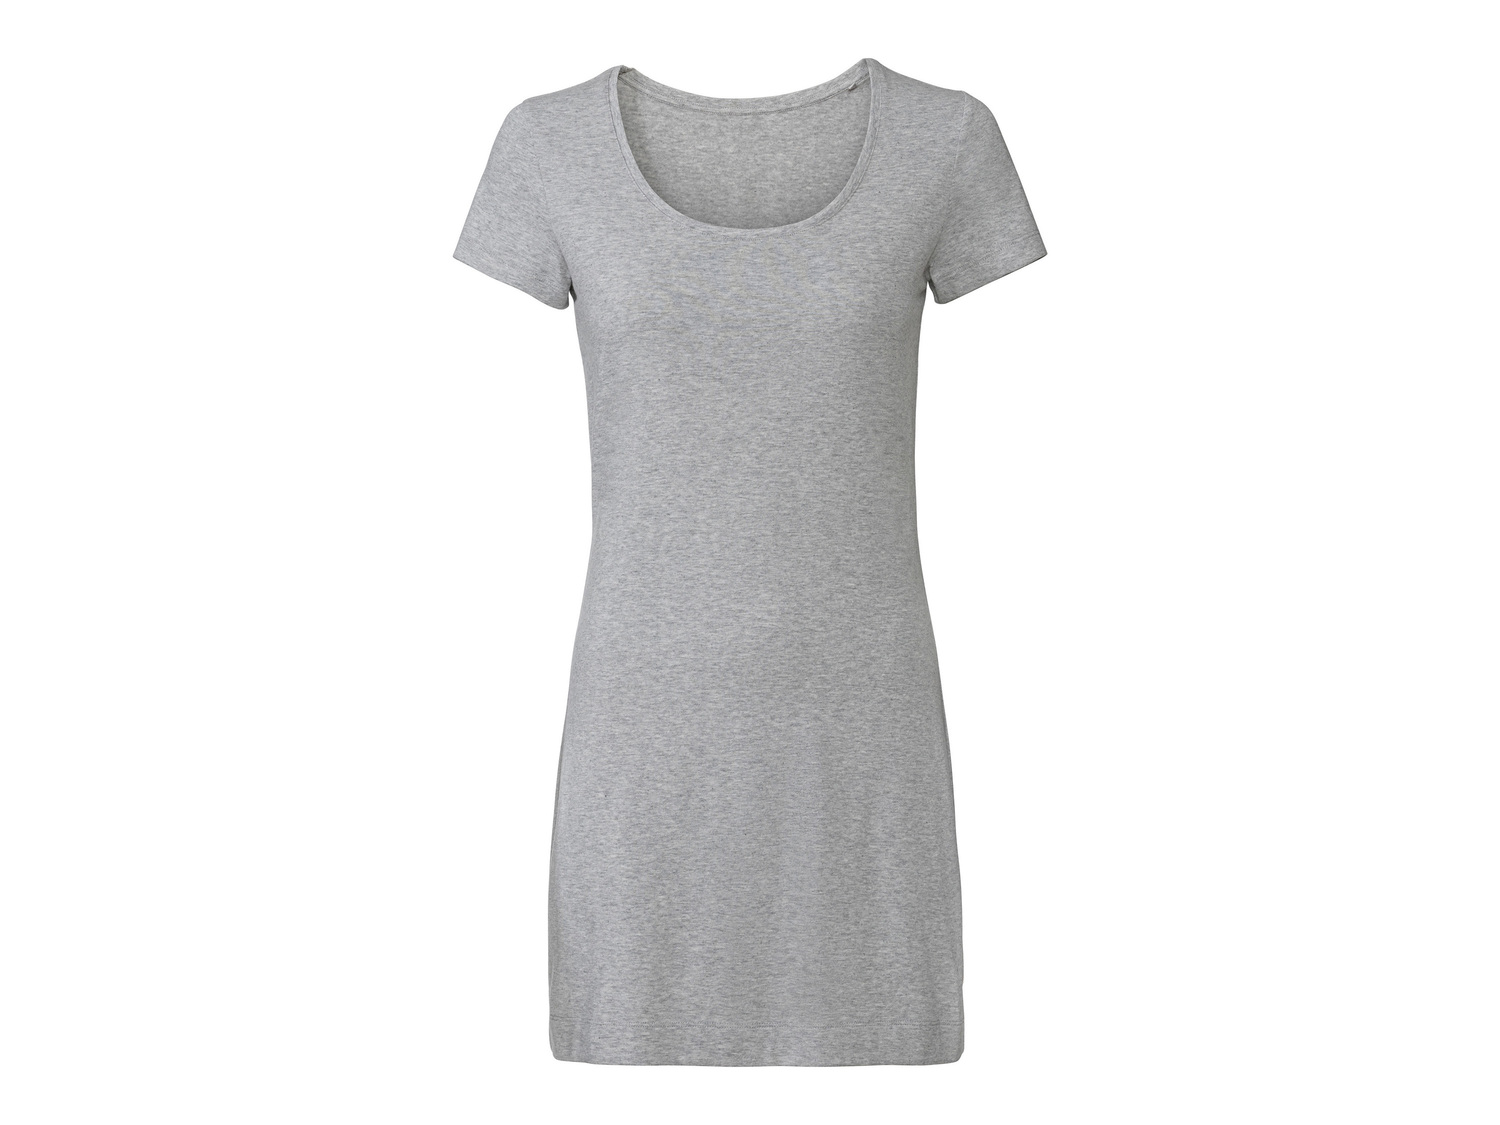 T-shirt lunga da donna Esmara, prezzo 4.99 € 
Misure: S-L
Taglie disponibili

Caratteristiche

- ...